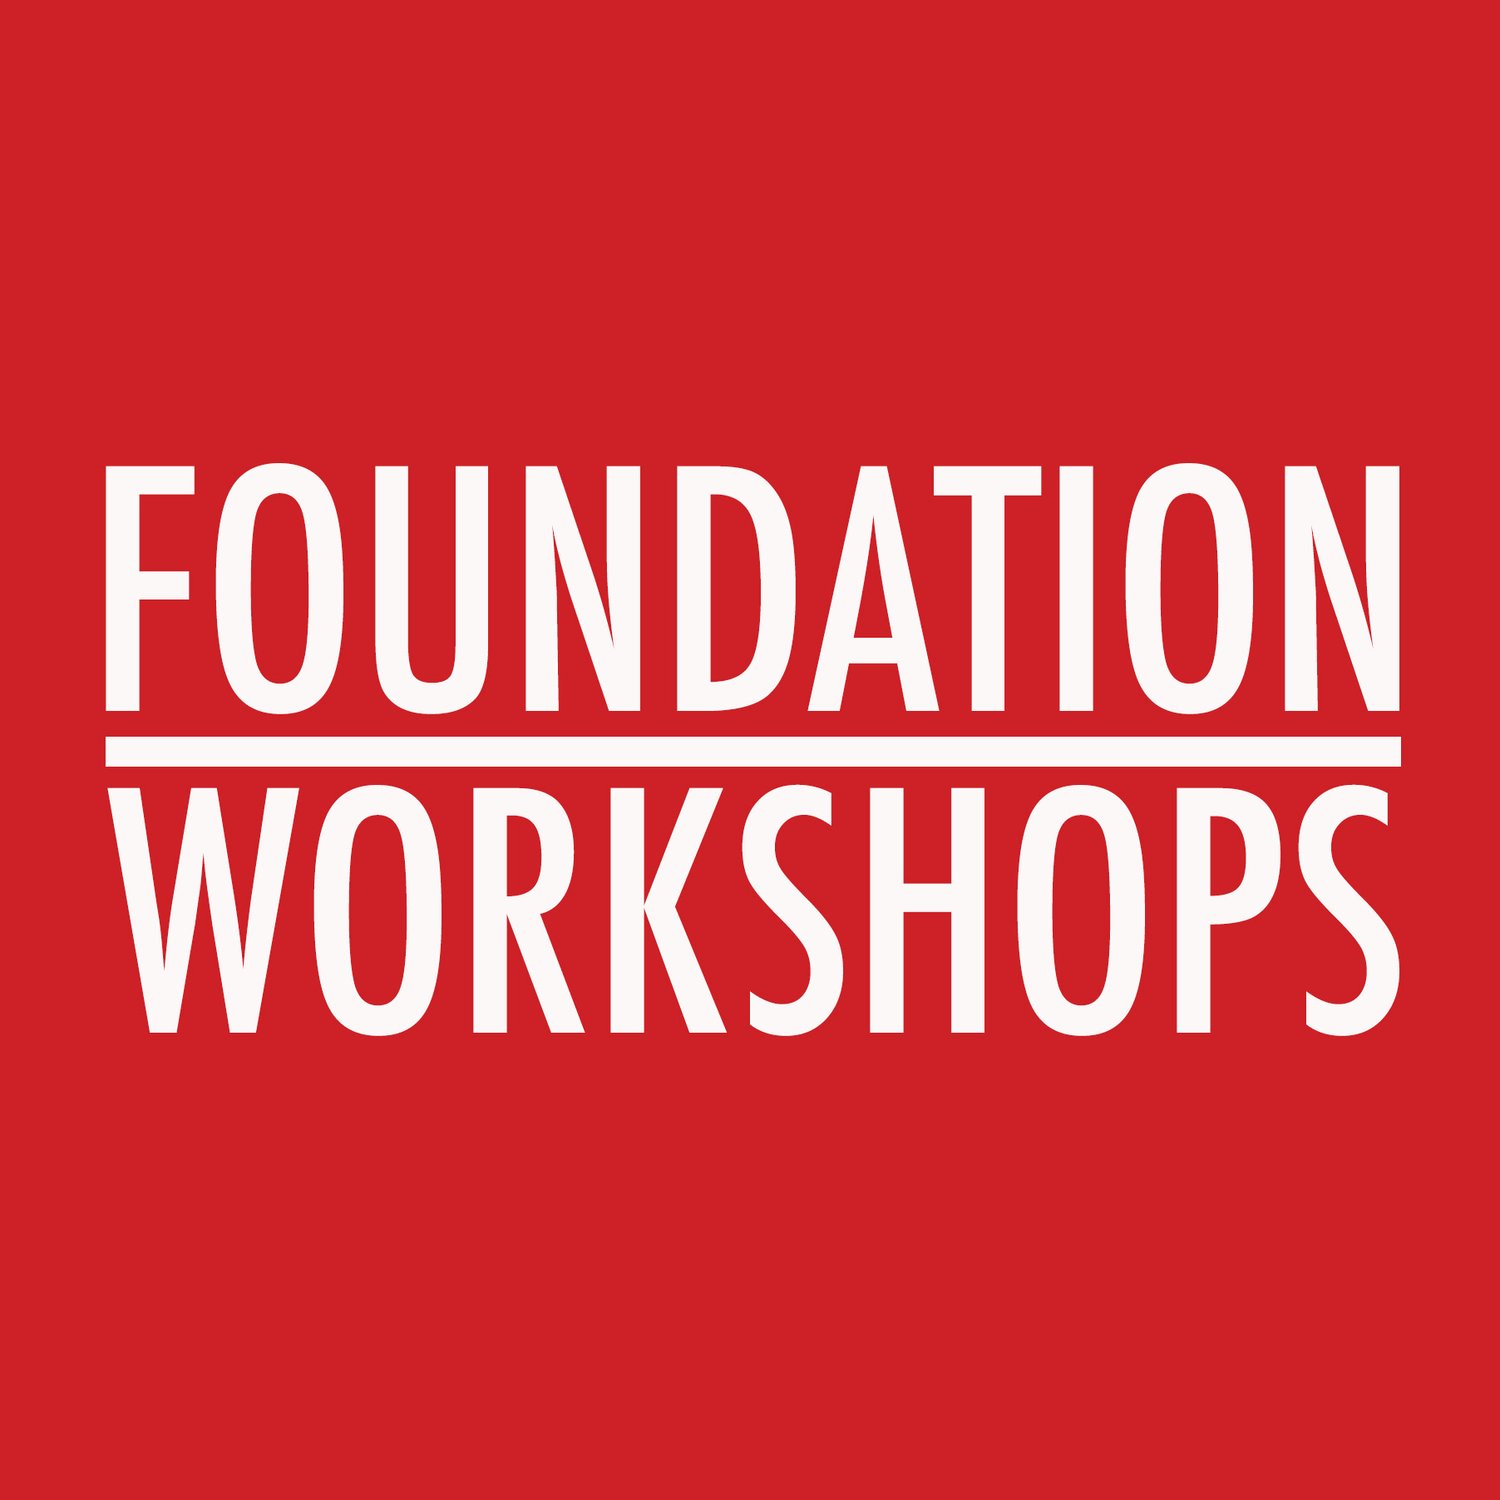 Foundation Workshops